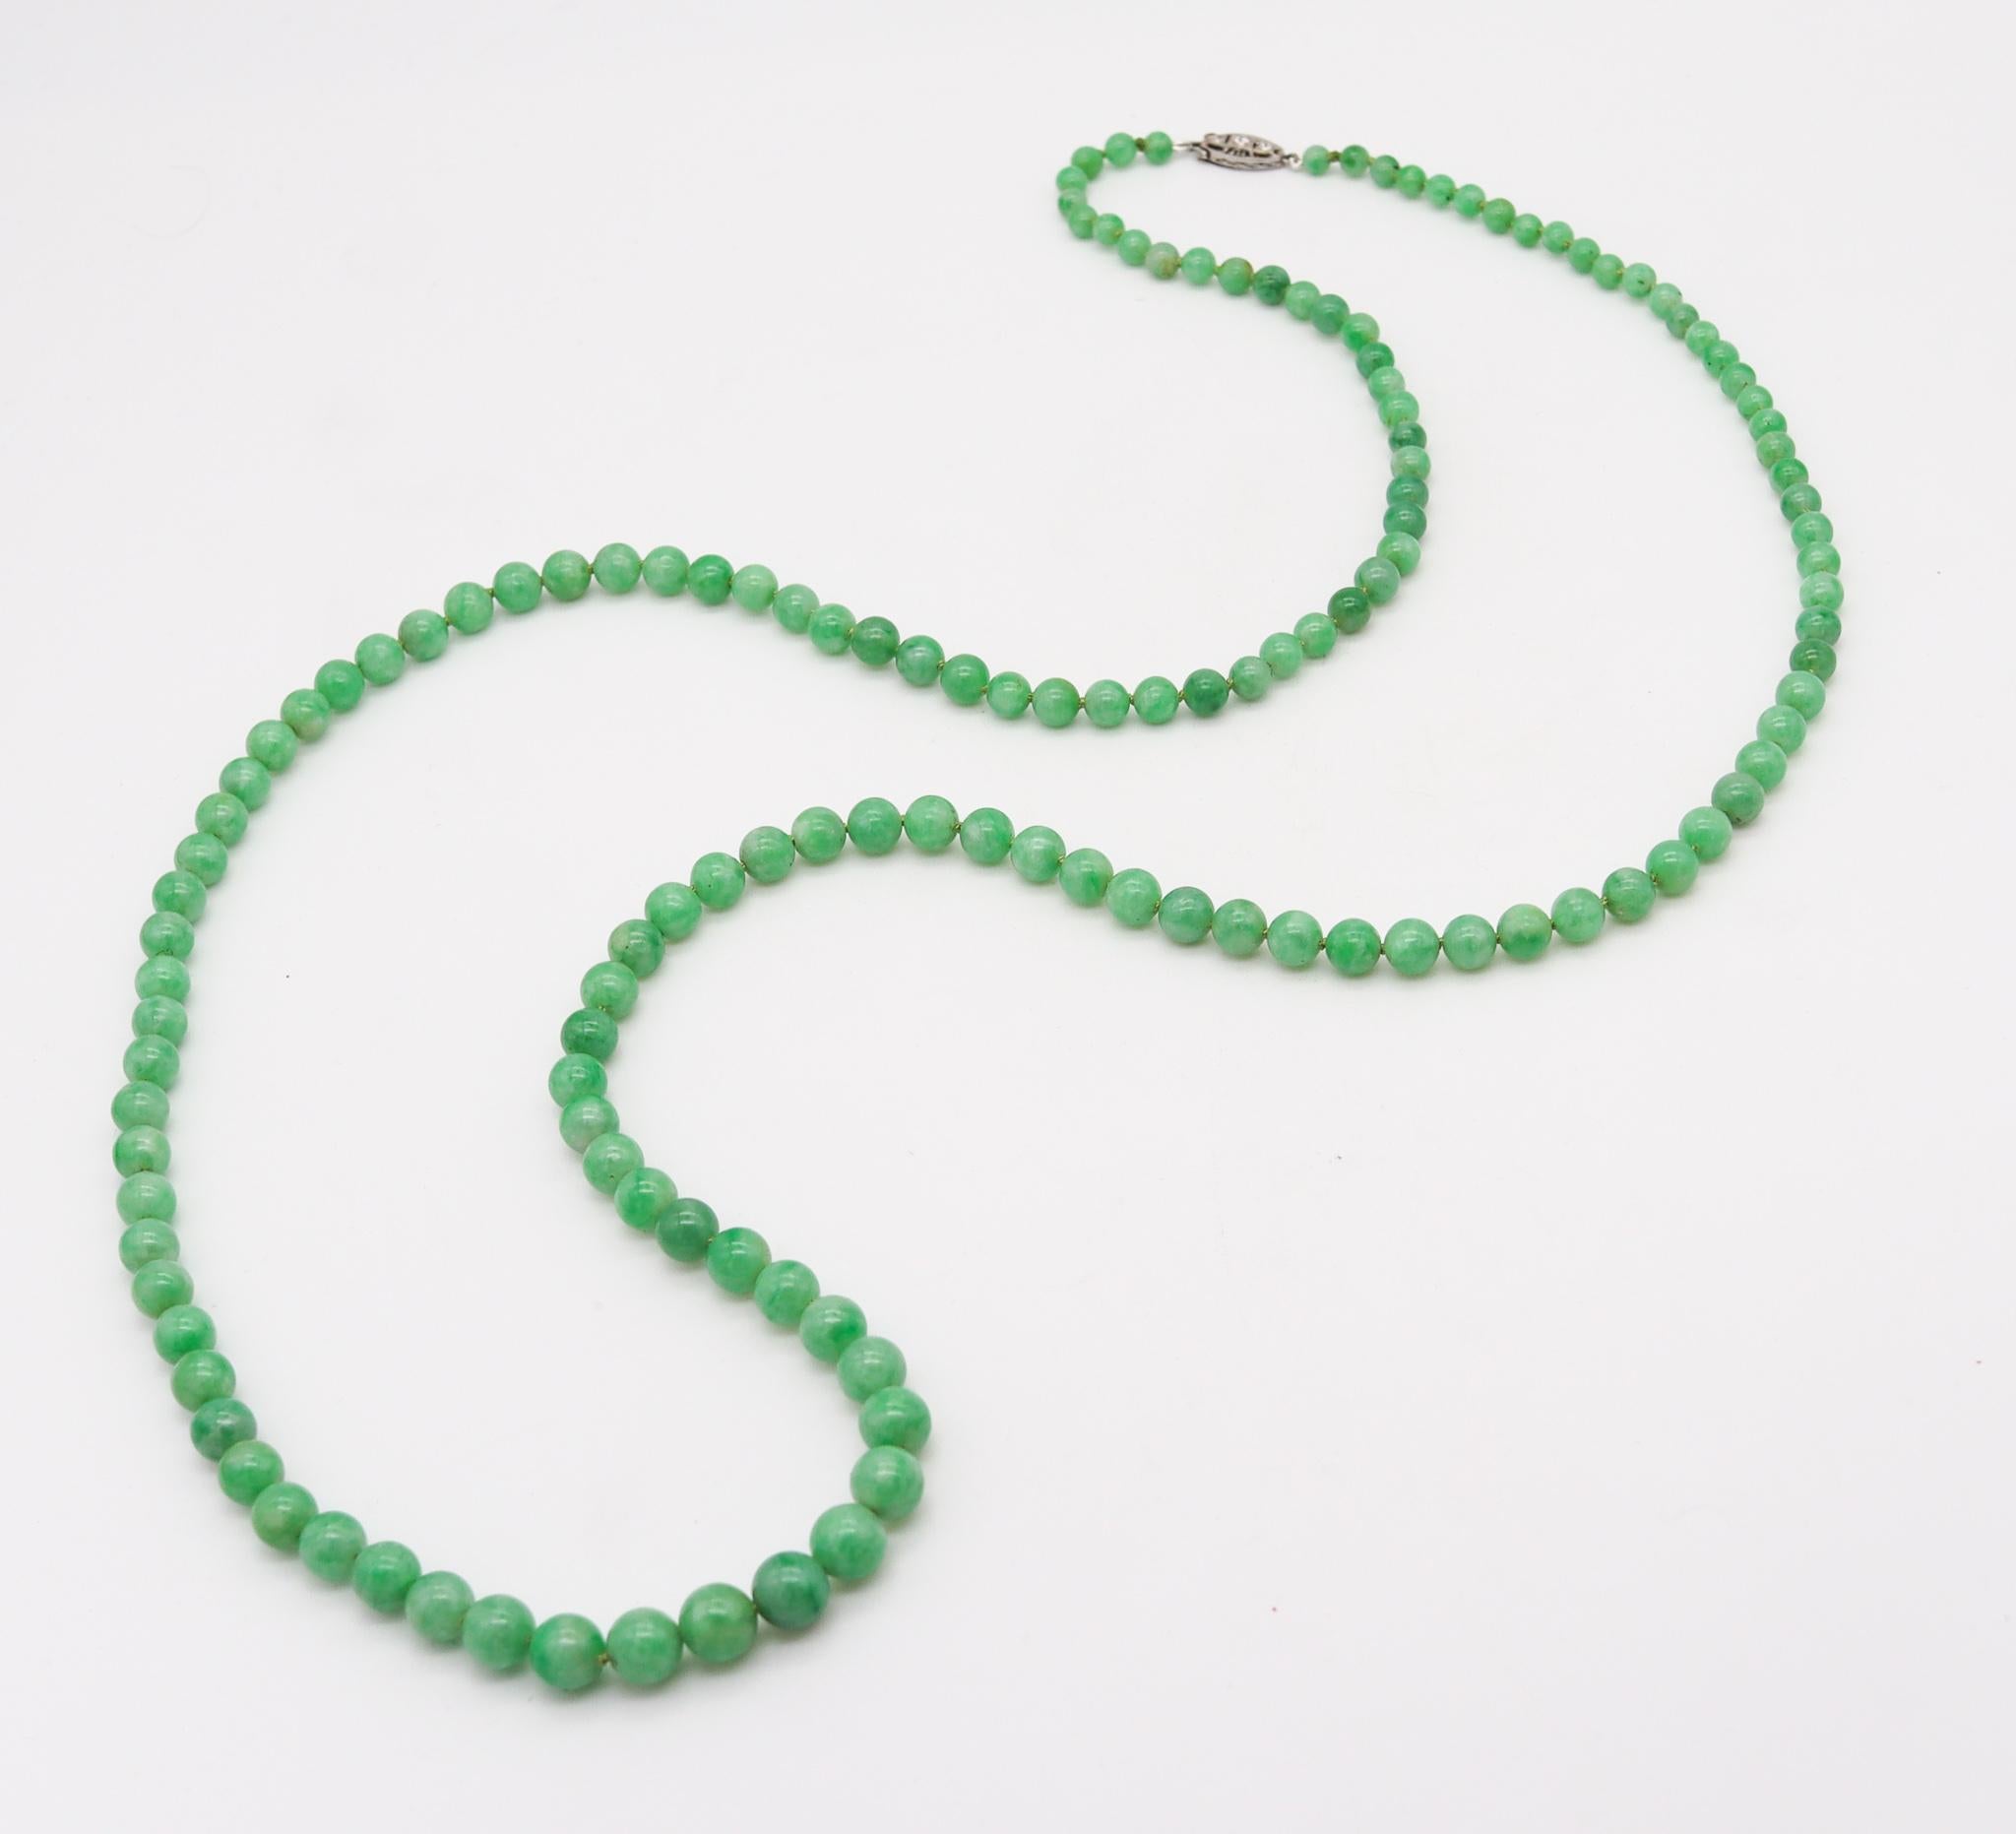 Eine Art-Deco-Halskette aus abgestuften Jadeit-Perlen.

Fabelhafte lange Halskette vom Typ Sautoir aus der Zeit des Art déco, ca. 1925. Es besteht aus mehreren abgestuften Kugeln aus burmesischer Jadeit-Jade mit dem originalen